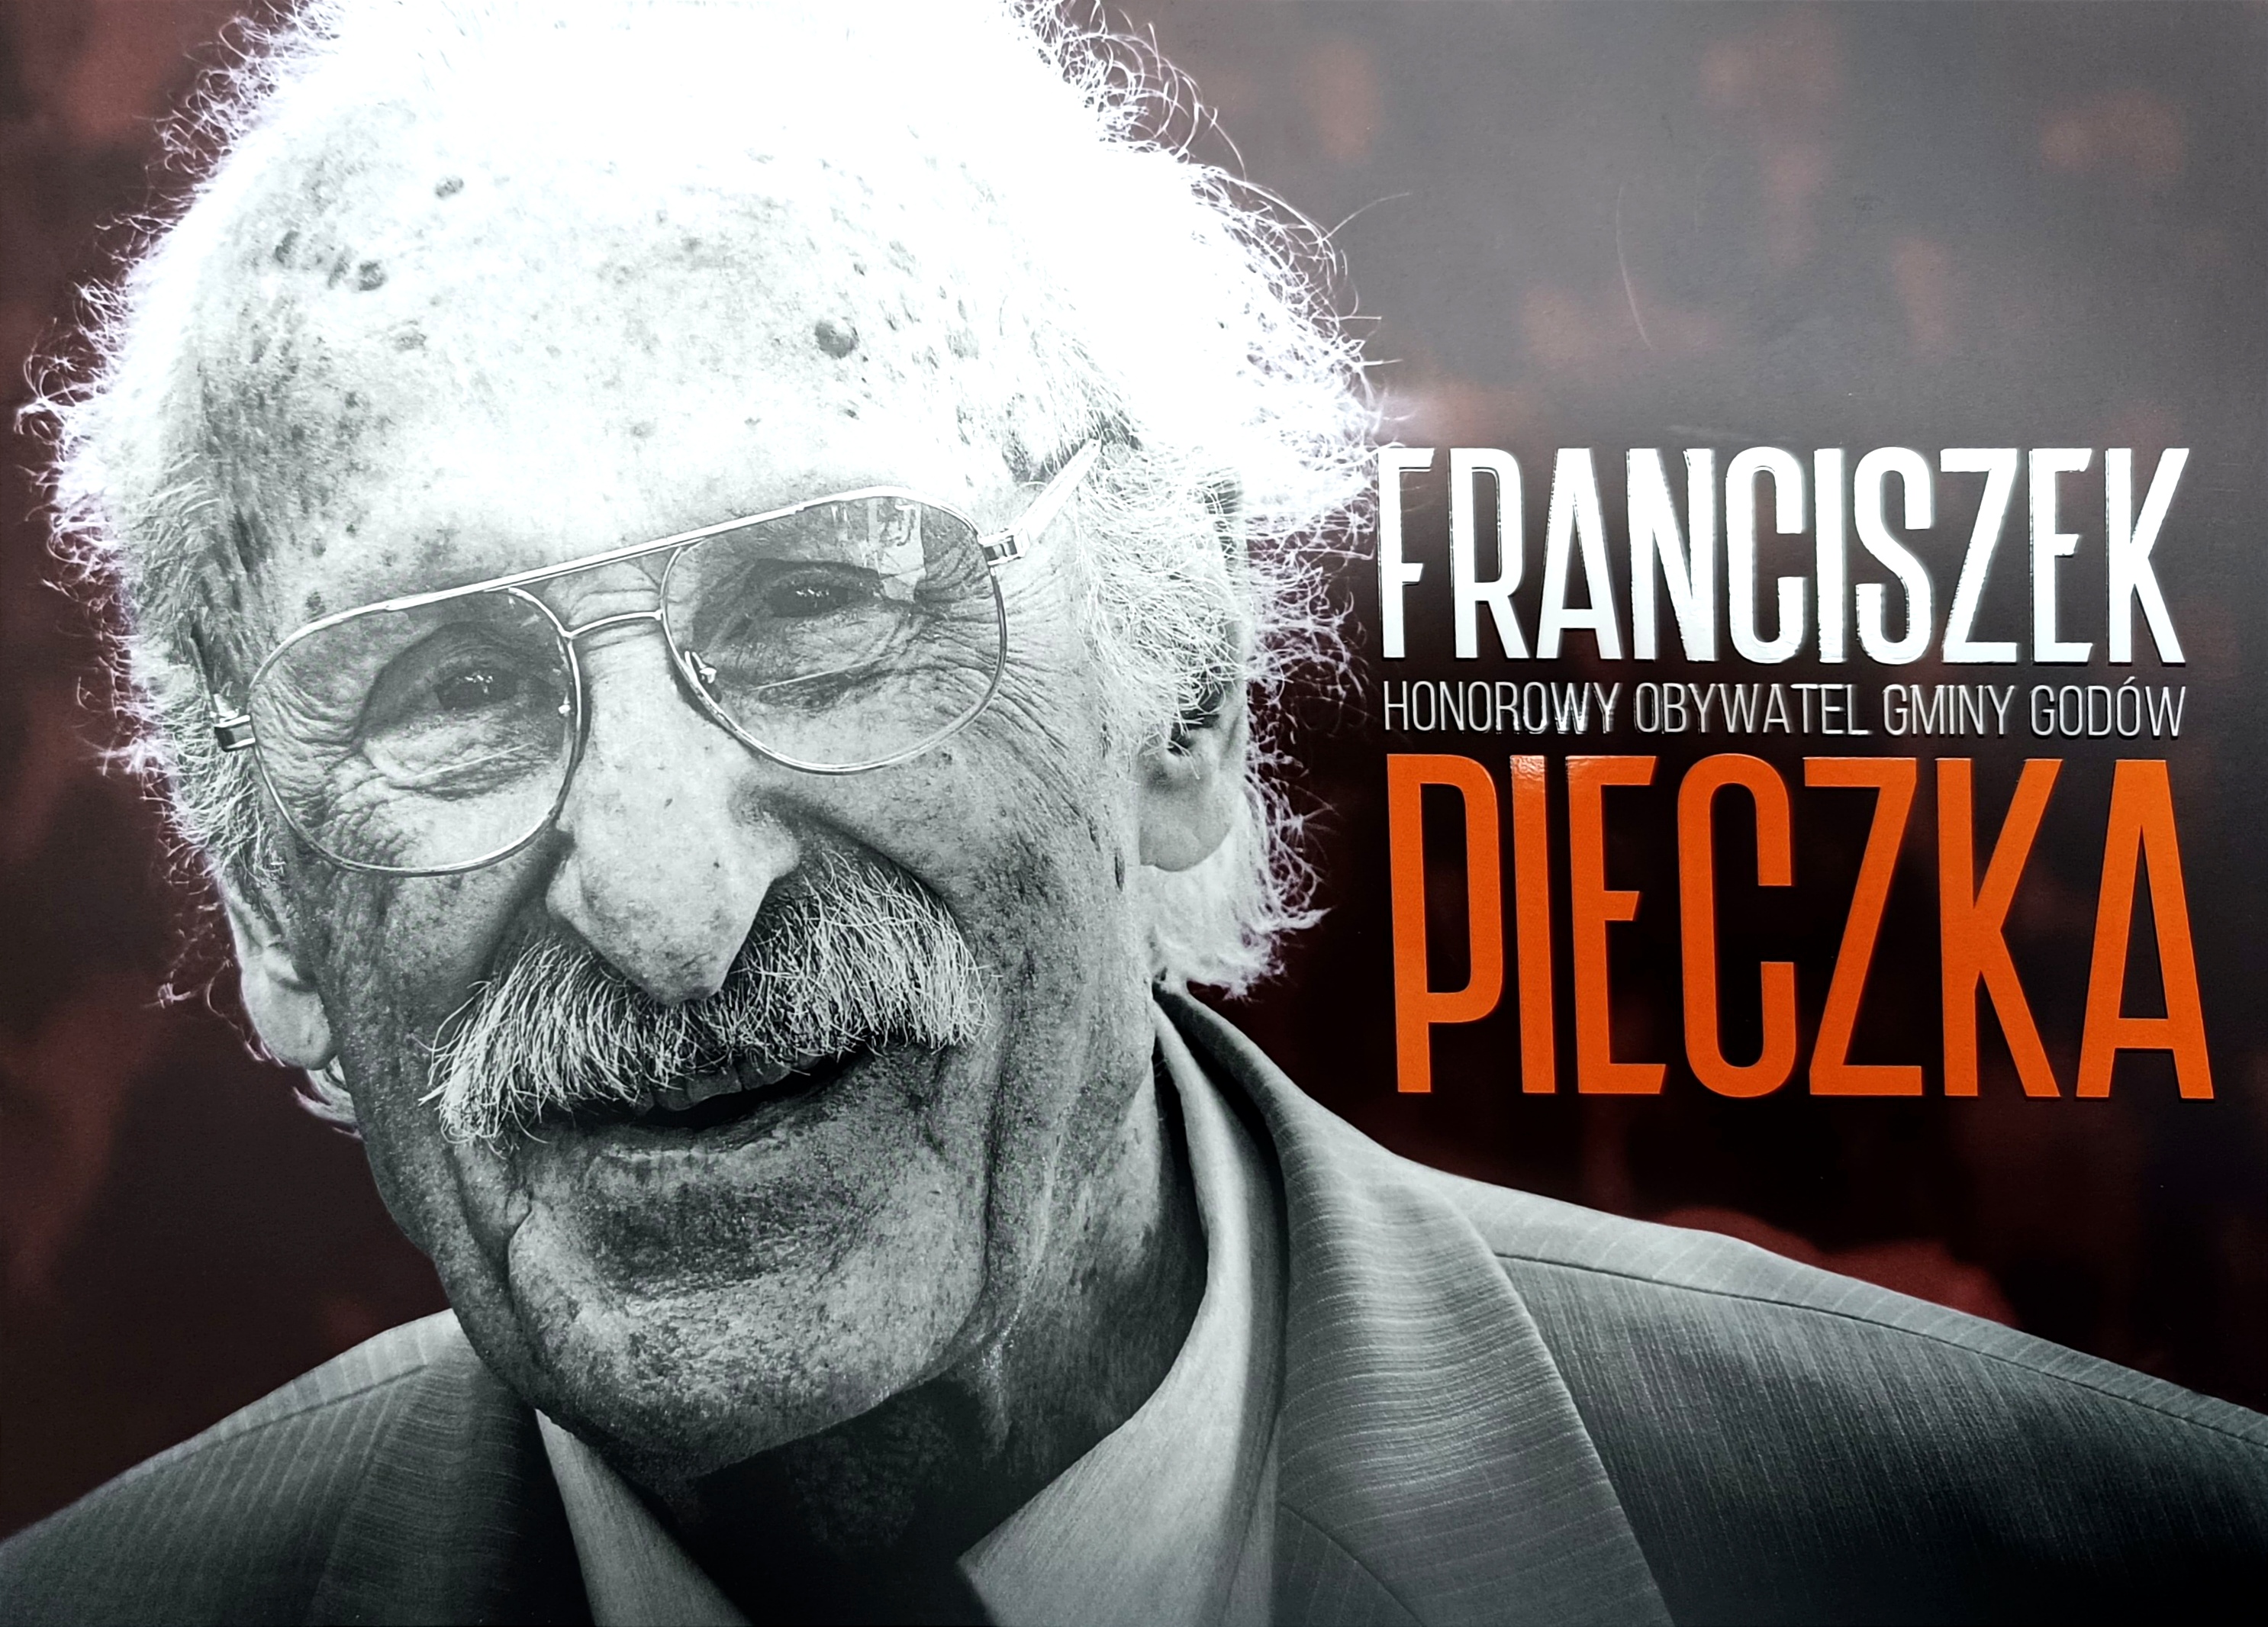 Franciszek Pieczka - Honorowy Obywatel Gminy Godów